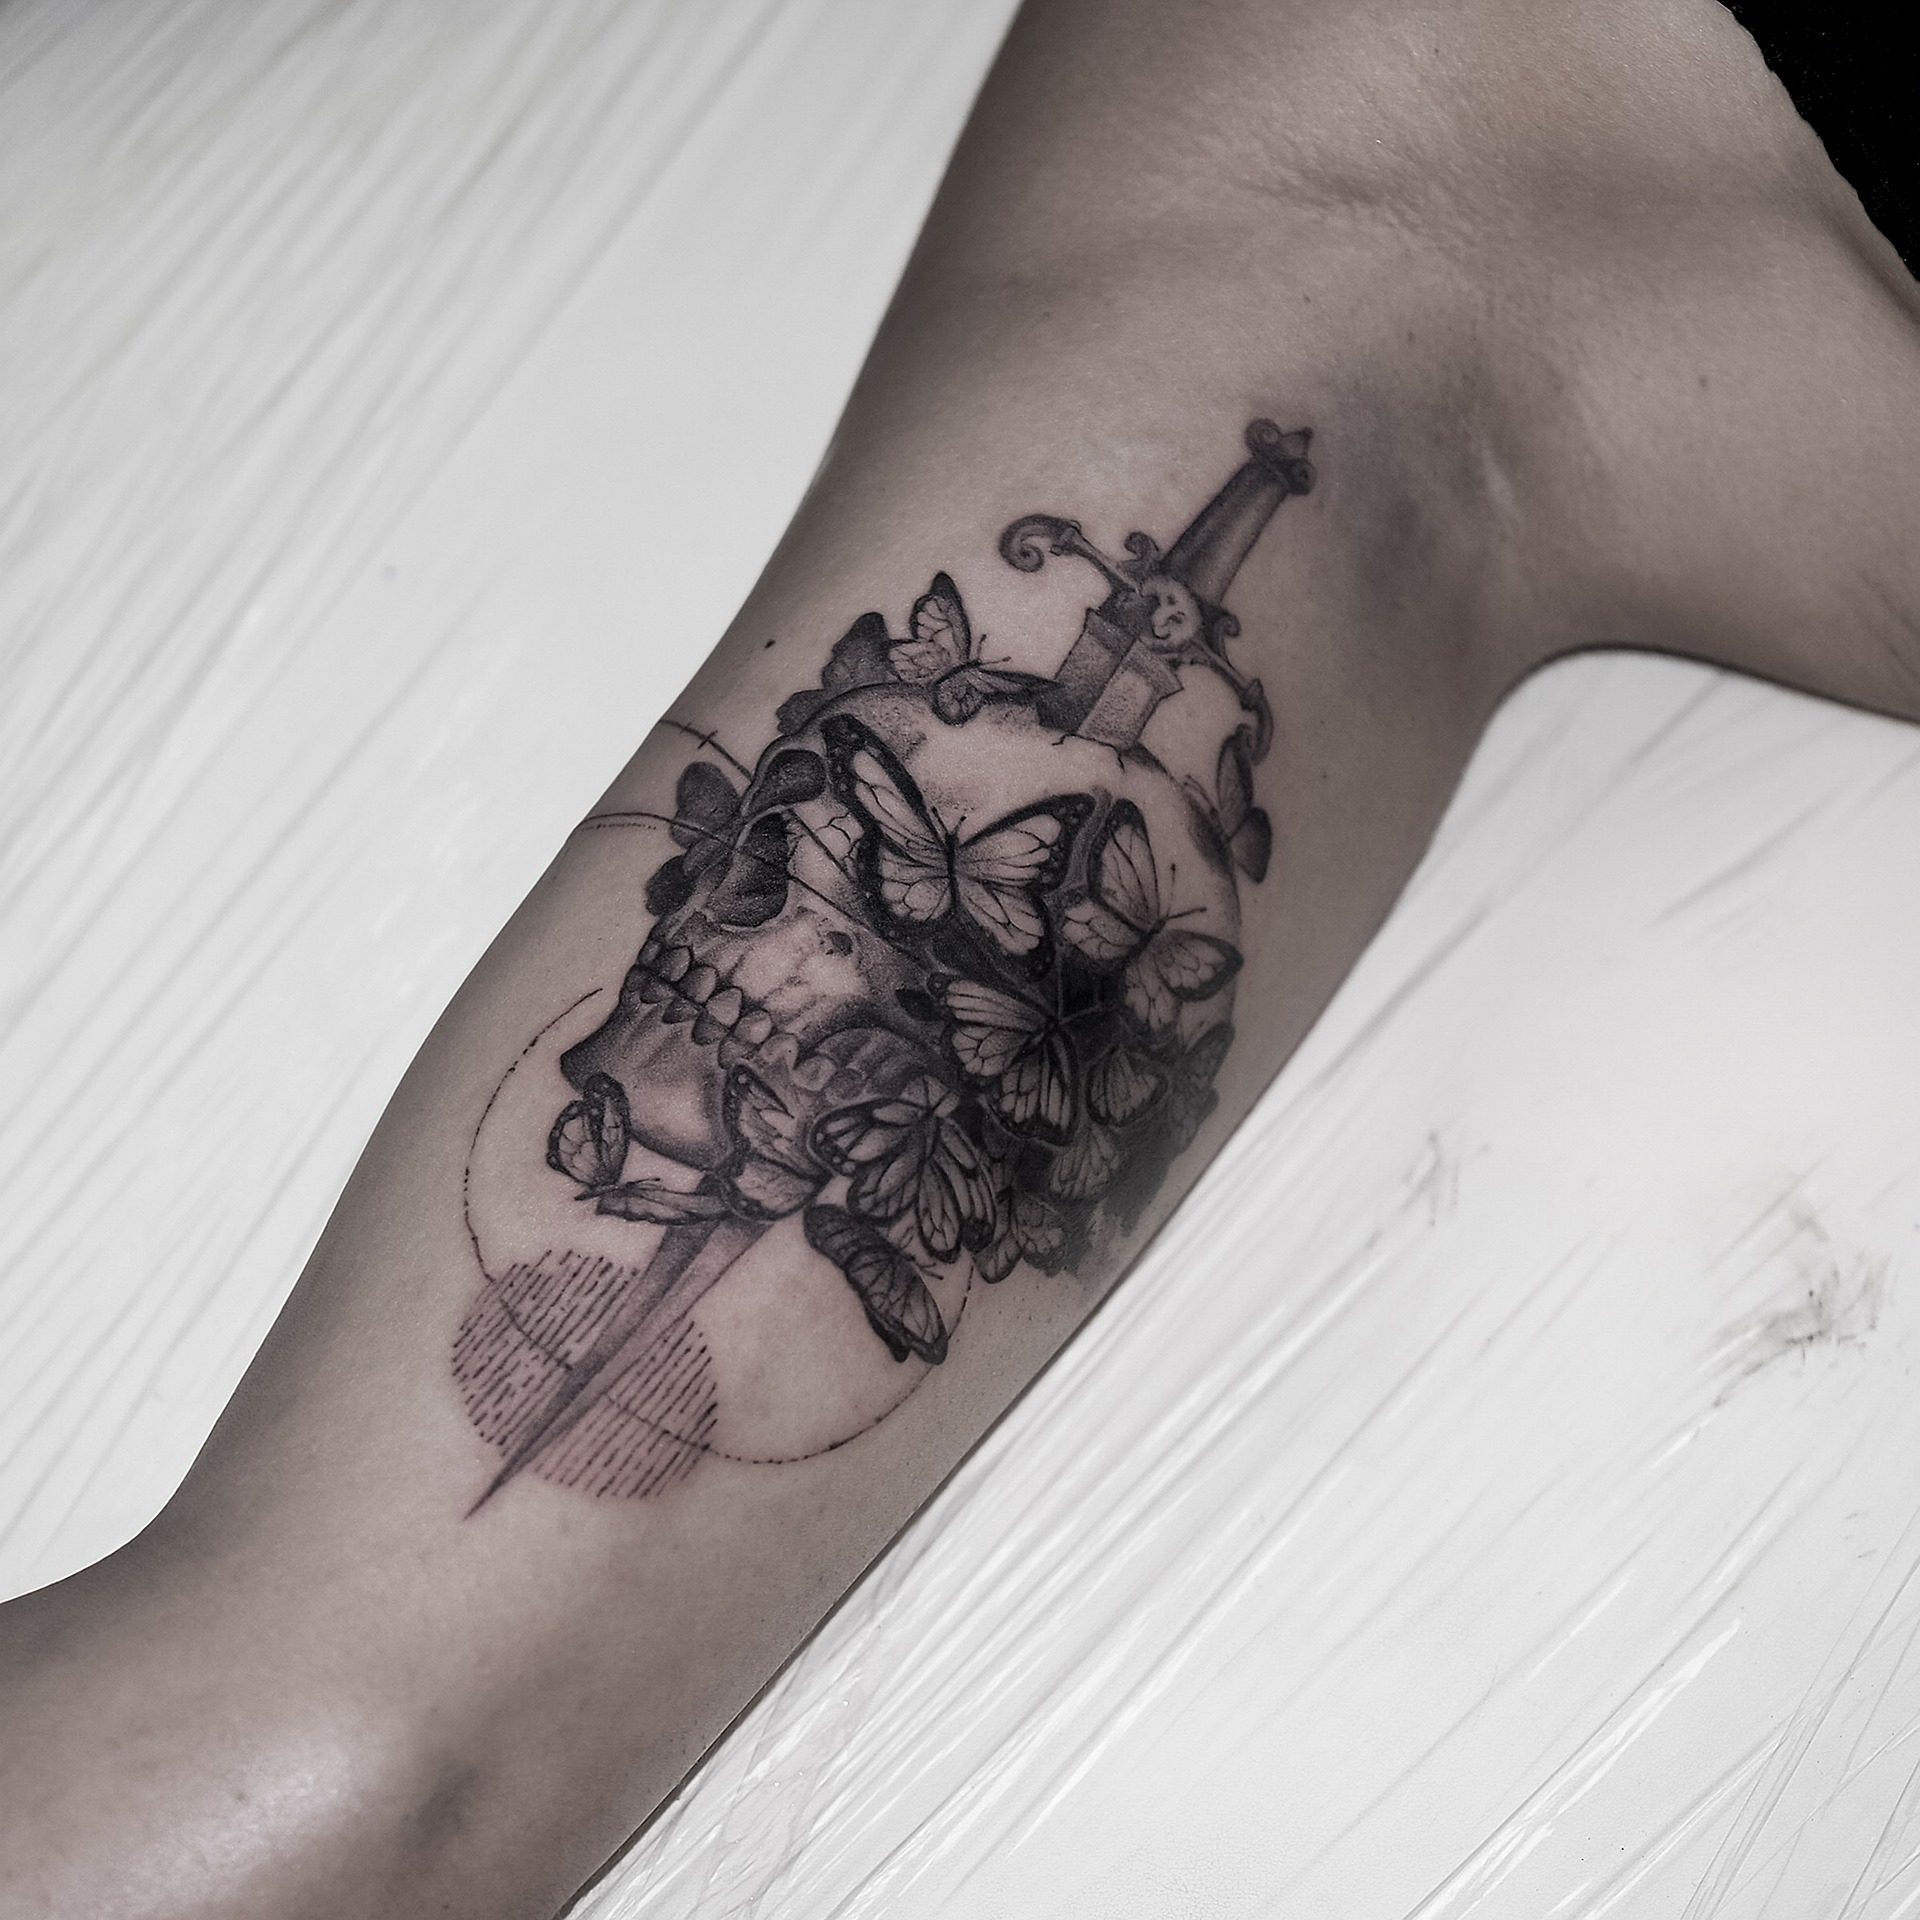 Tatuaż mikrorealistyczny portret Coco Chanel